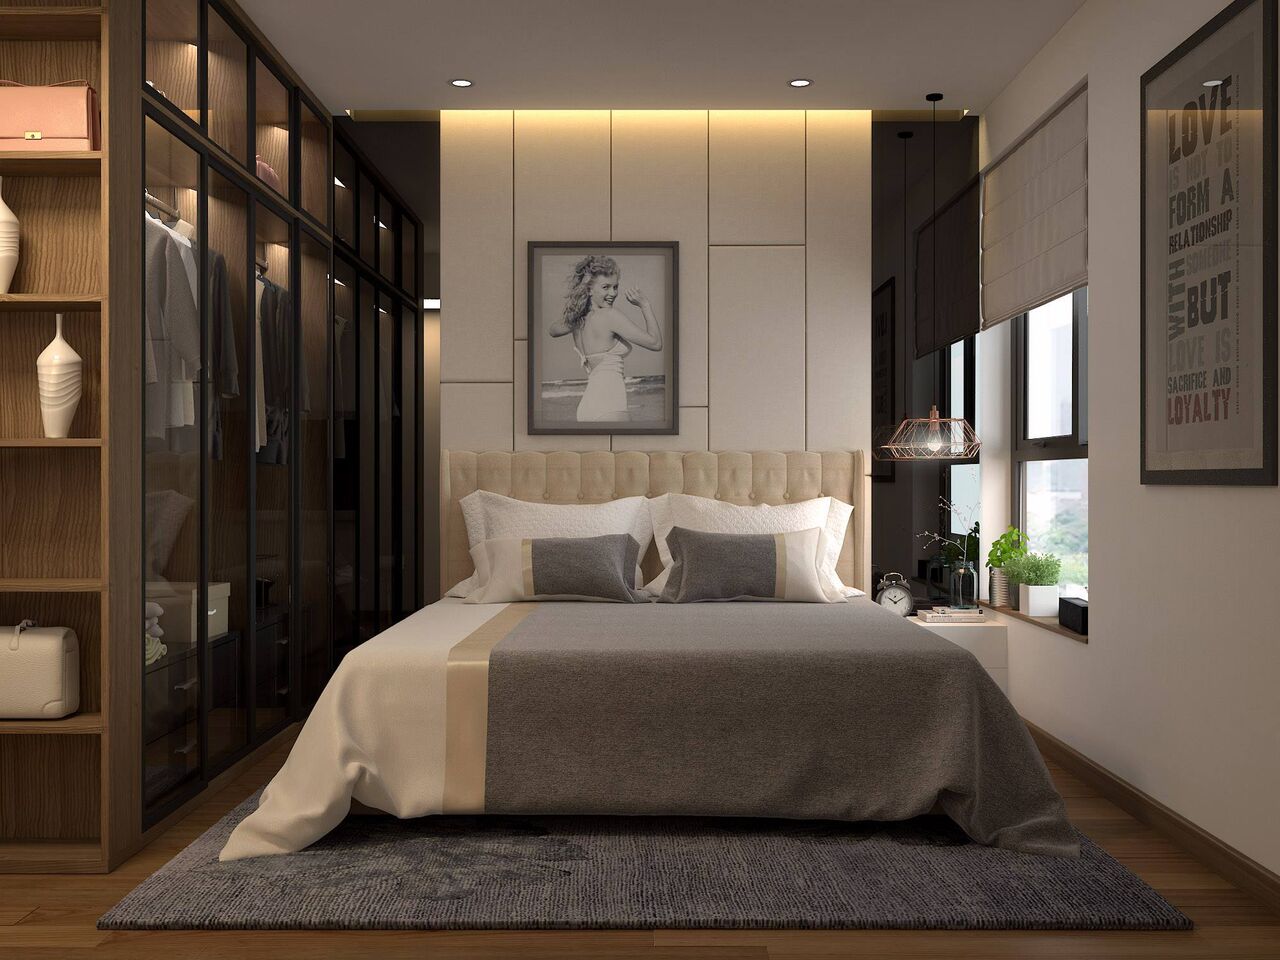 Mẫu thiết kế phòng ngủ nhỏ đẹp hiện đại đơn giản sang trọng